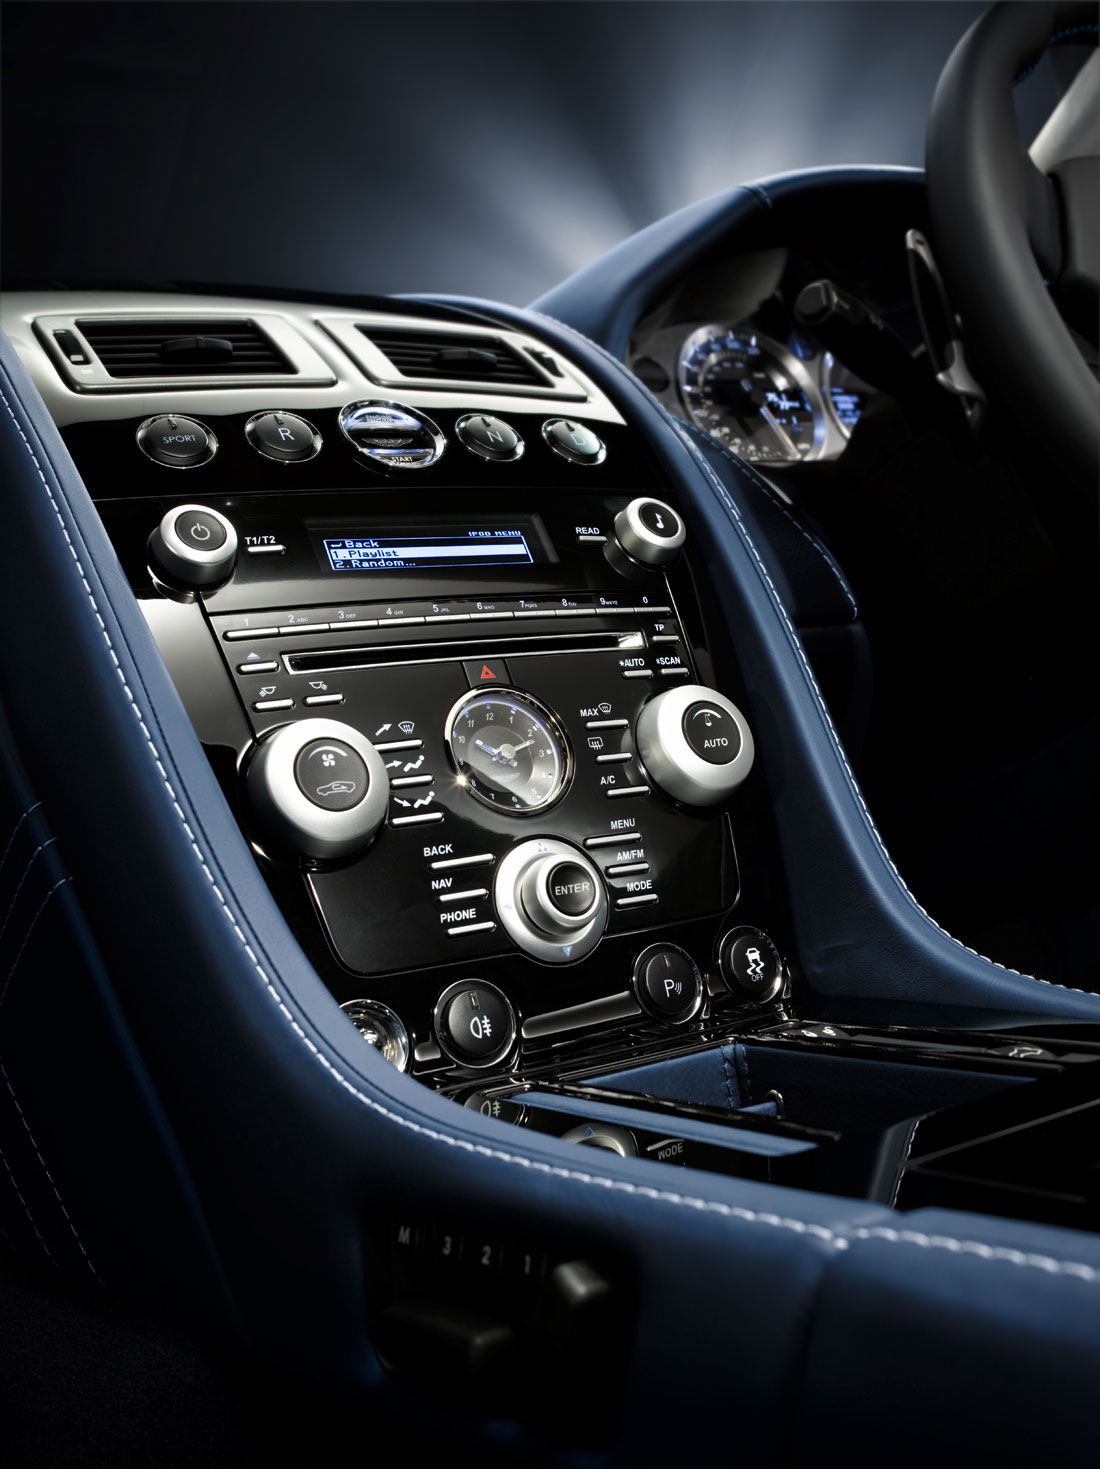 Car Best Design Aston Martin V8 Vantage Interior Has Very